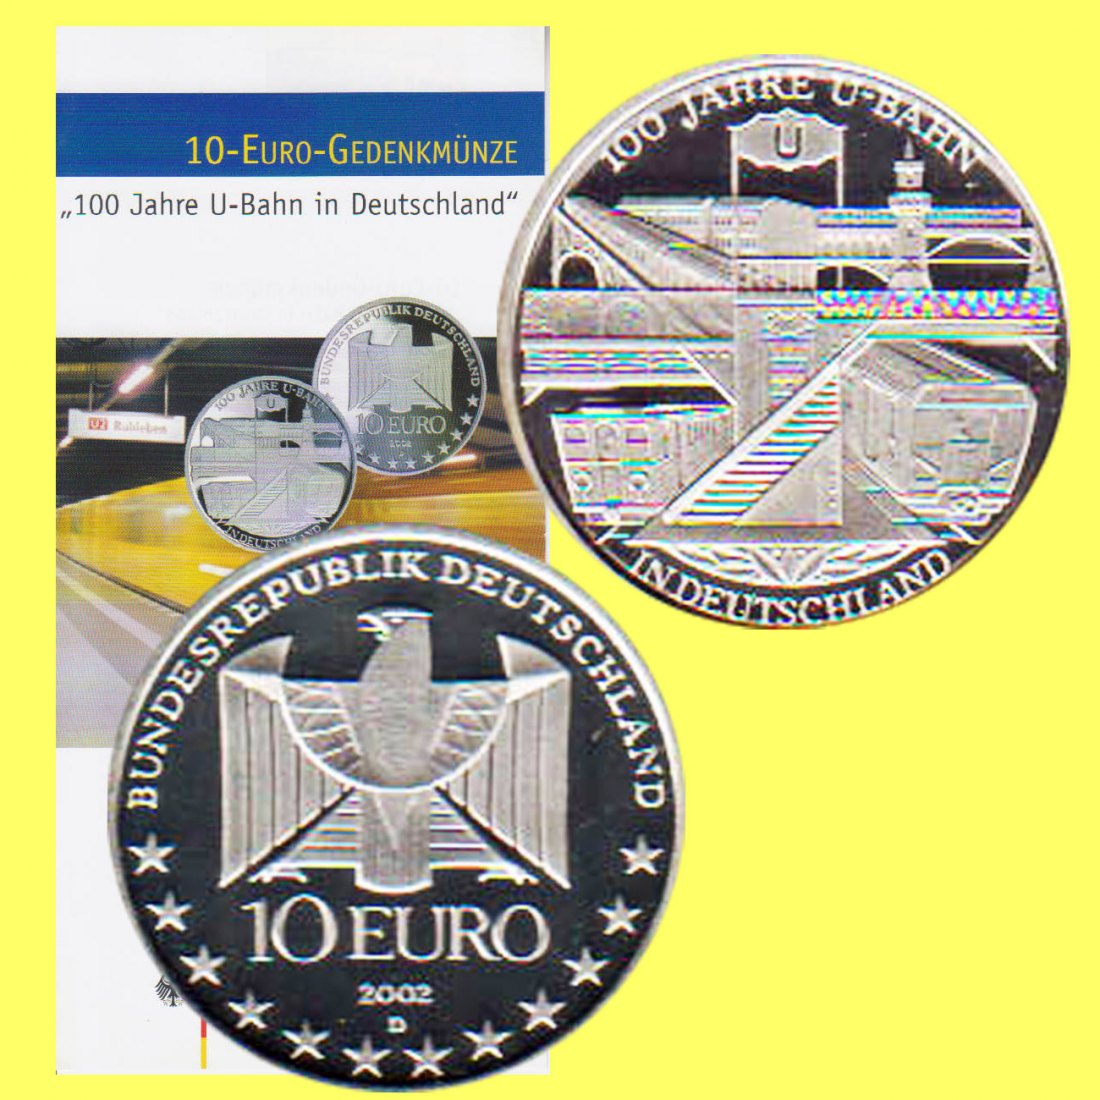  Offiz. 10-Euro-Silbermünze BRD *100 Jahre U-Bahn in Deutschland* 2002 *PP*   